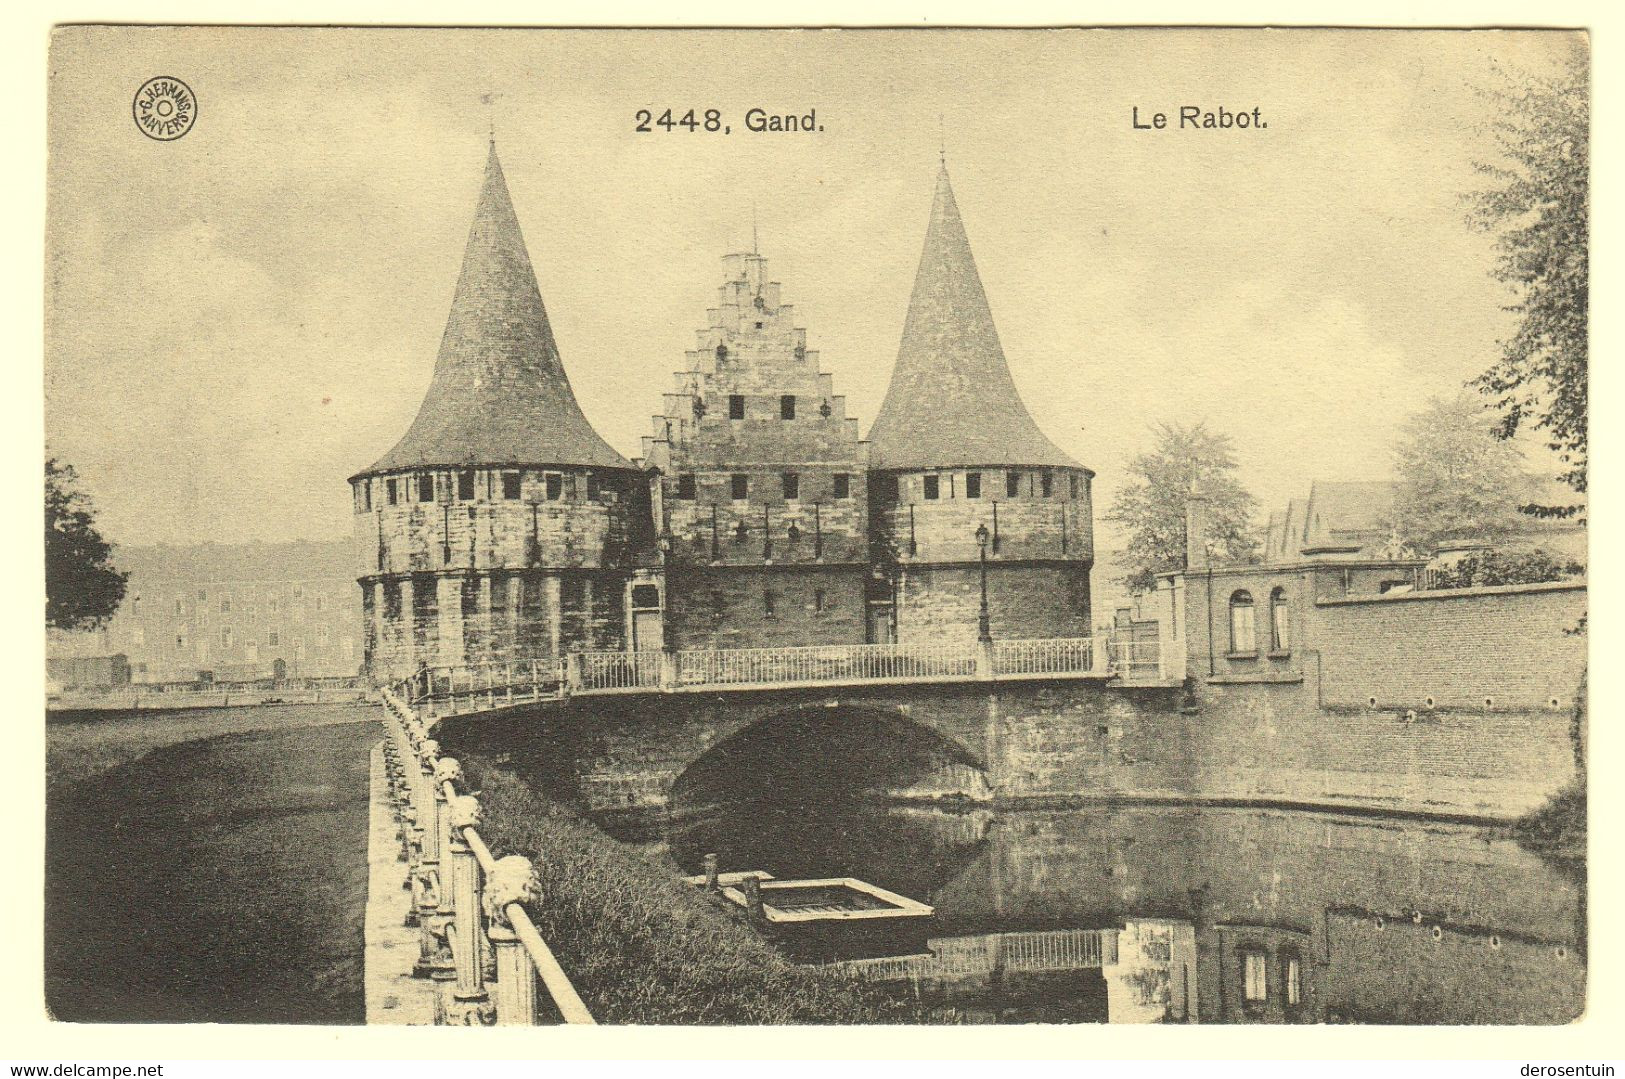 a0023	[Postkaarten] Gent (gemengd lot, varia). - Lot van 60 postkaarten, klein formaat, diverse periodes